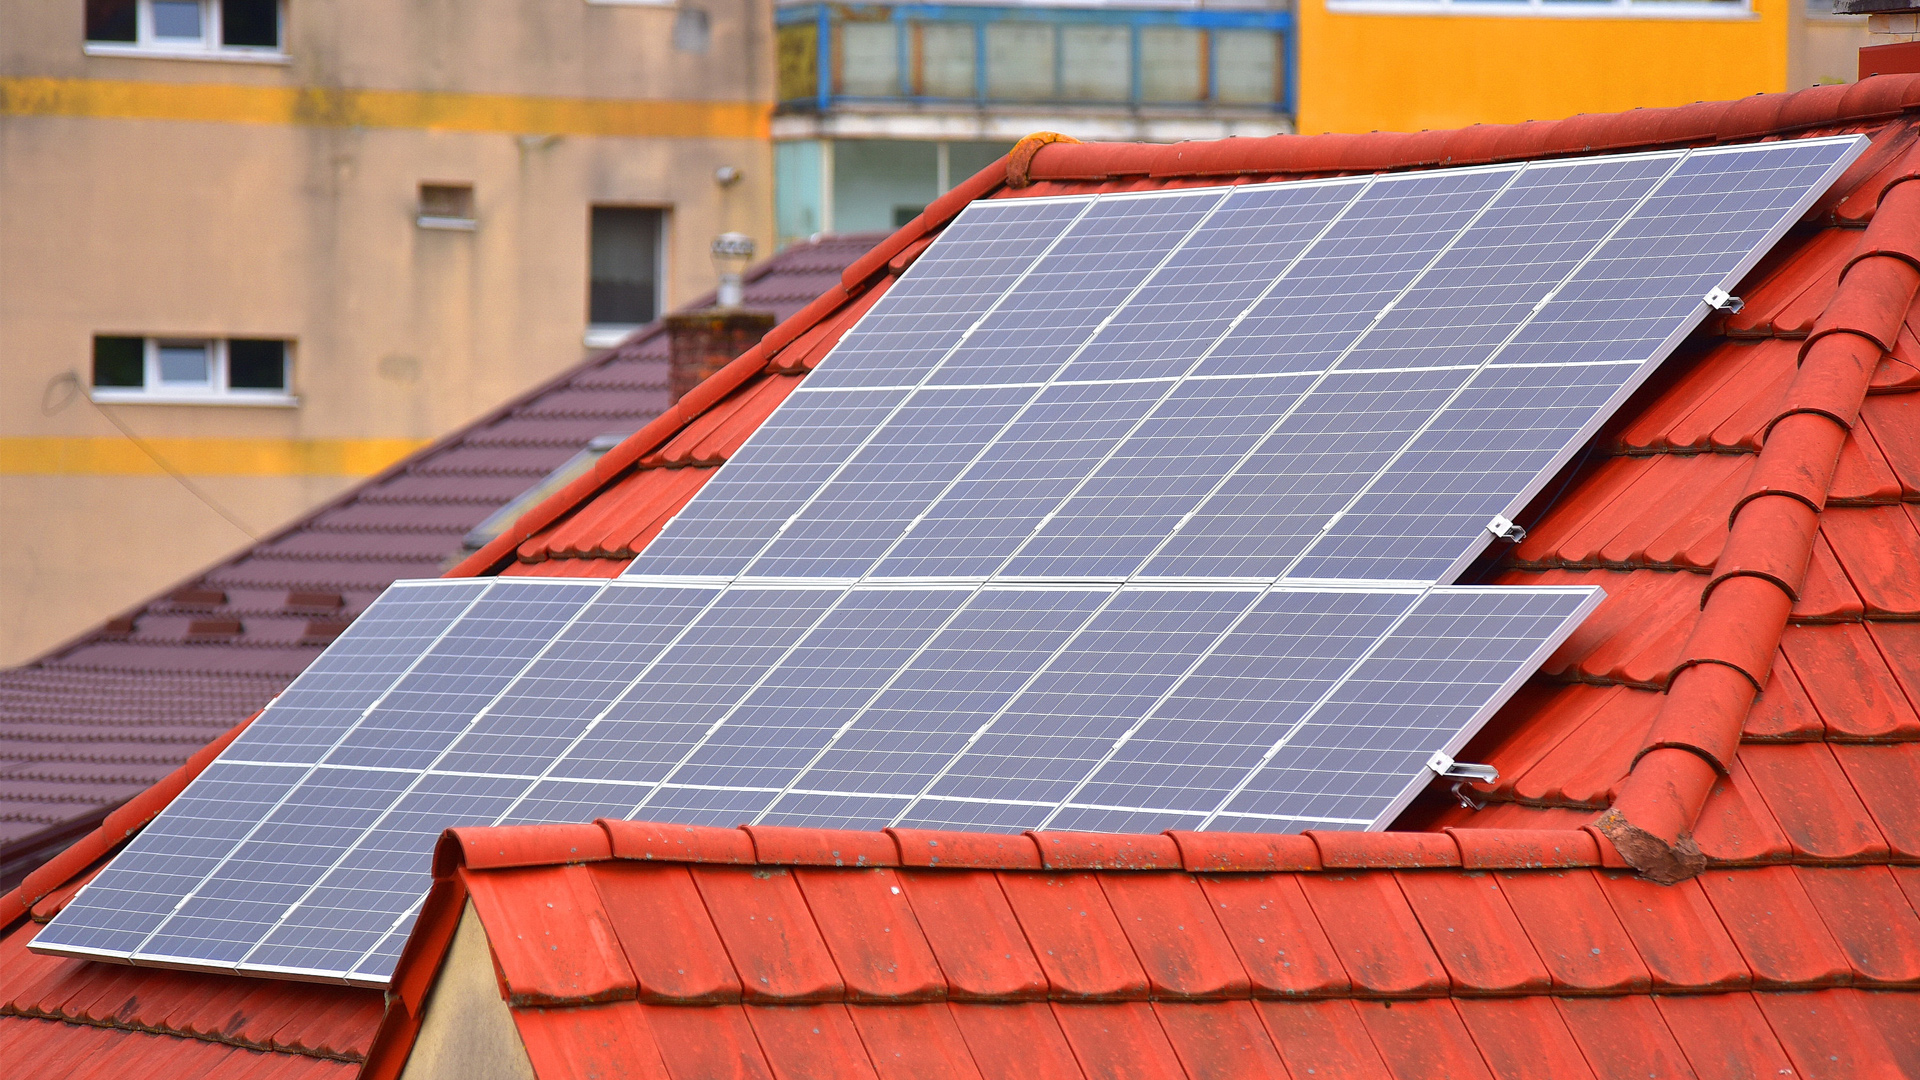 Május 19-én indítják a fotovoltaikus Zöld ház programot